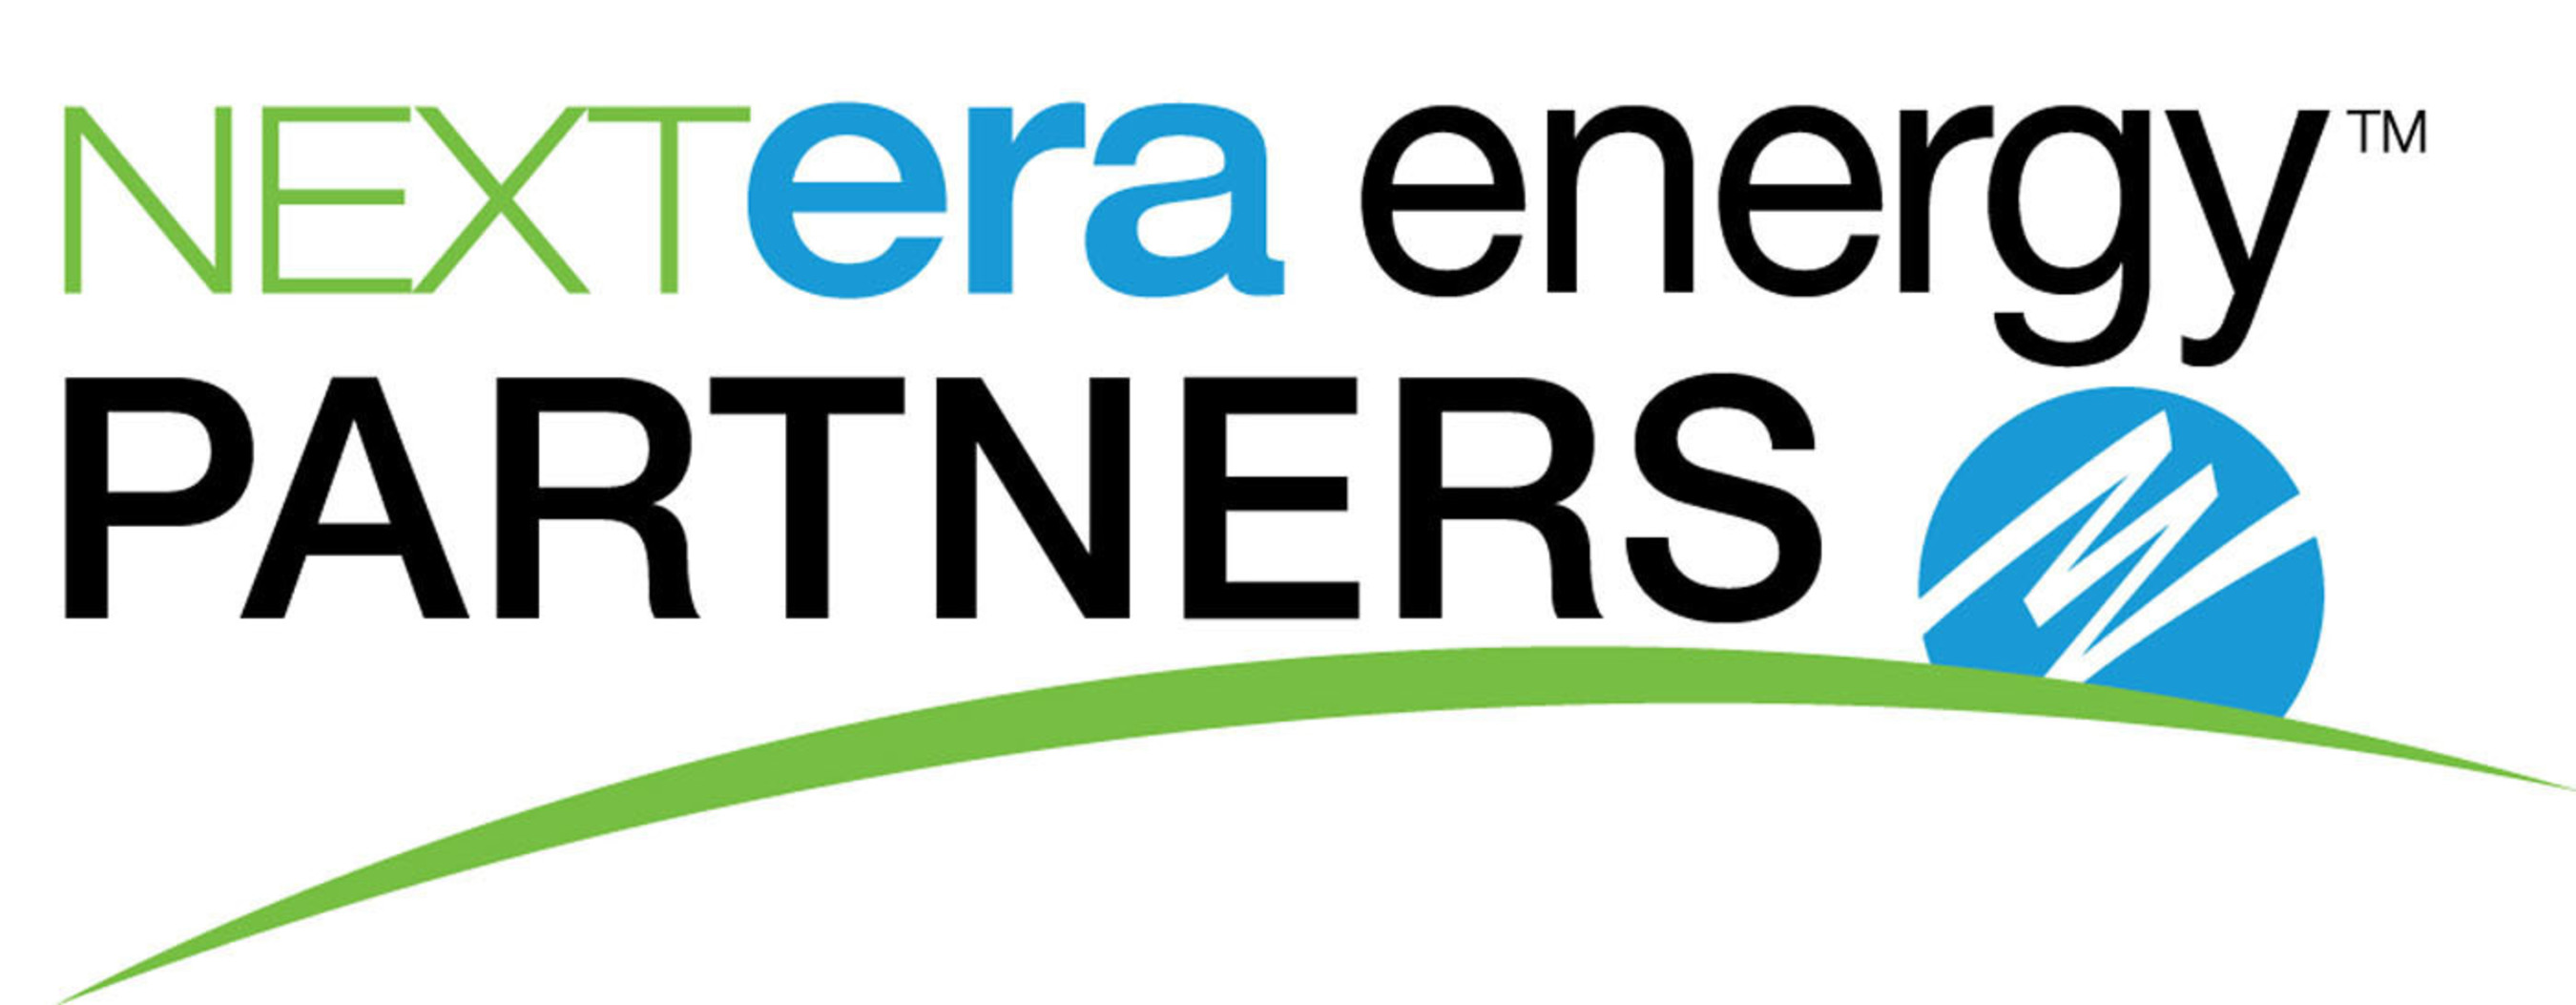 NextEra Energy Partners, LP